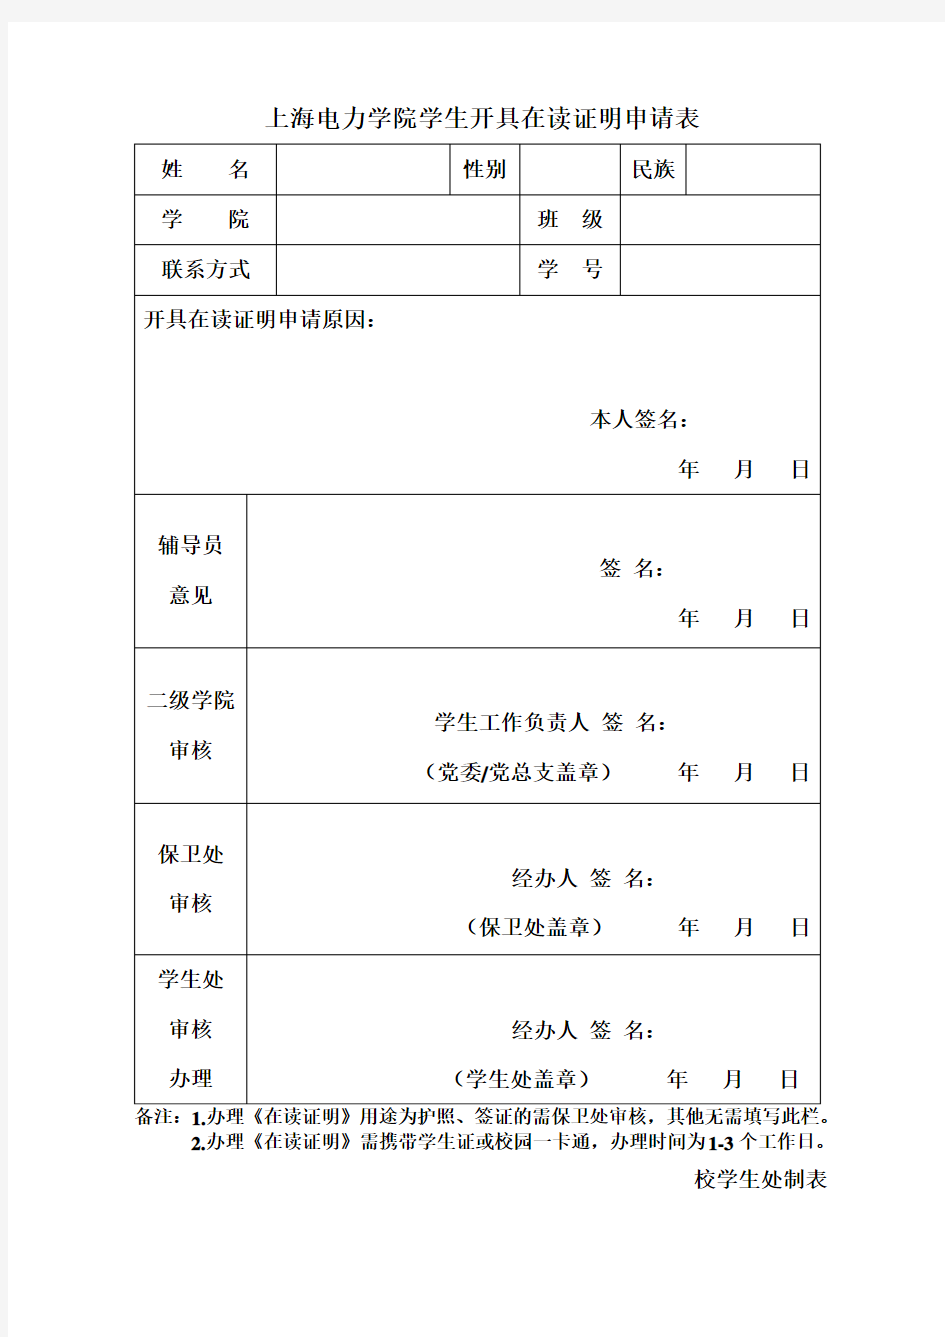 上海电力学院学生开具在读证明申请表